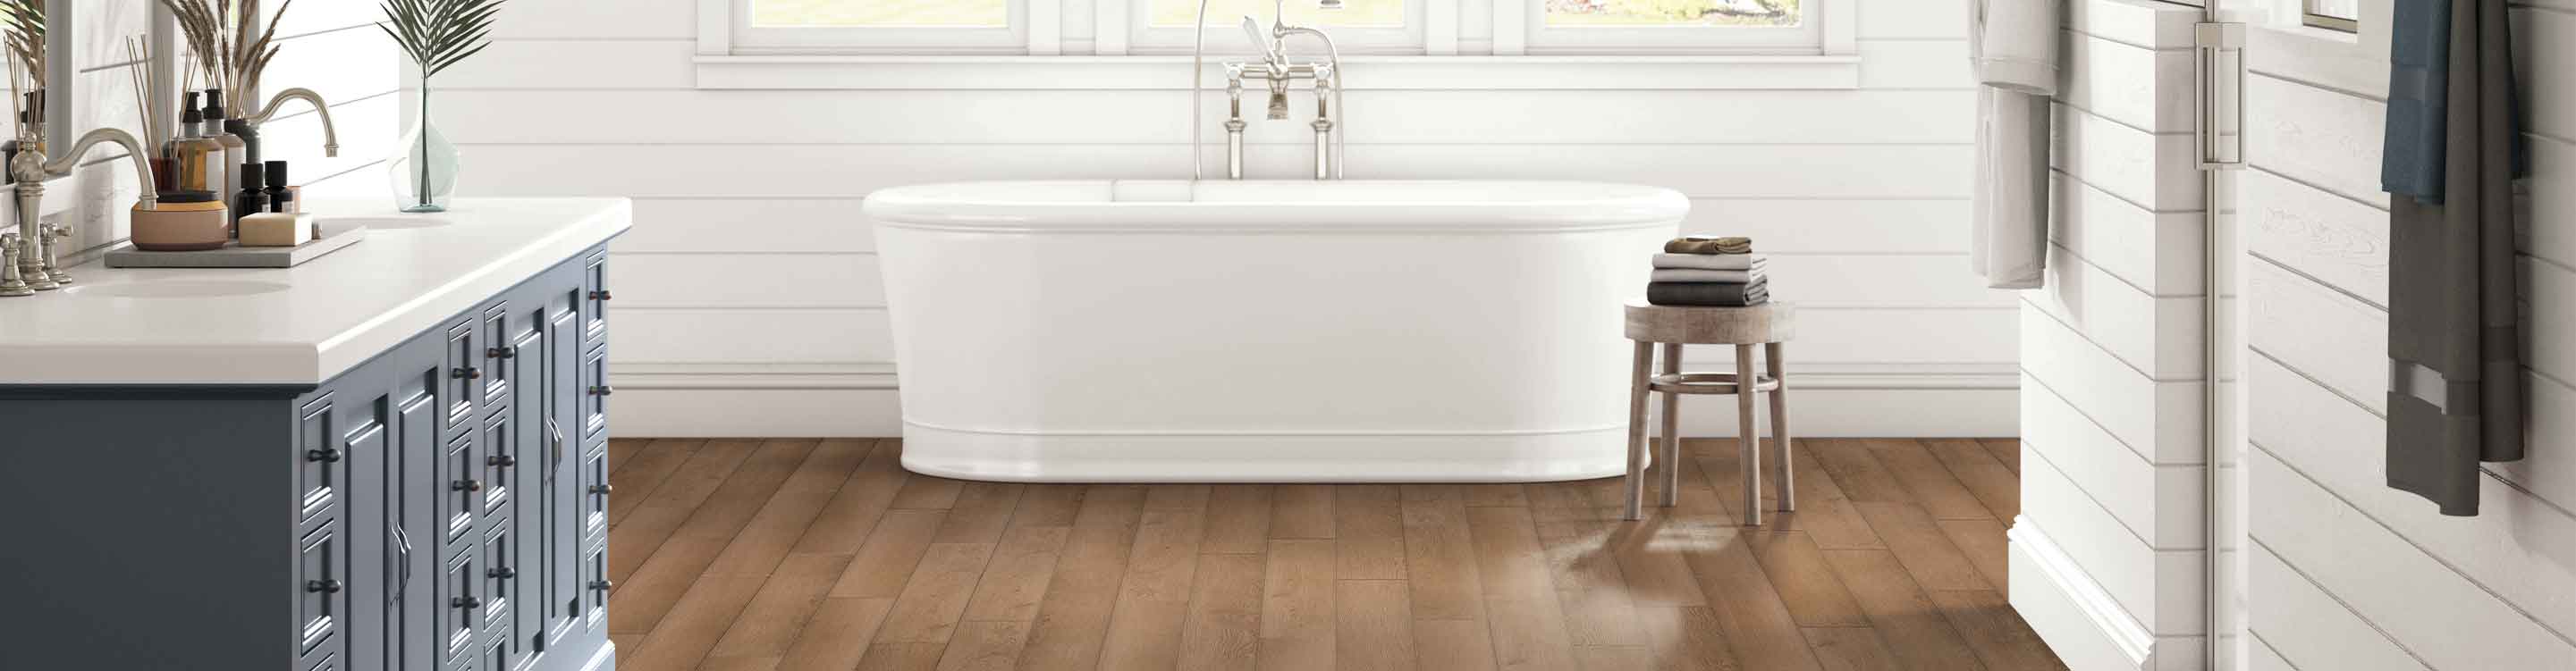 waterproof wood look flooring in bathroom with white tub